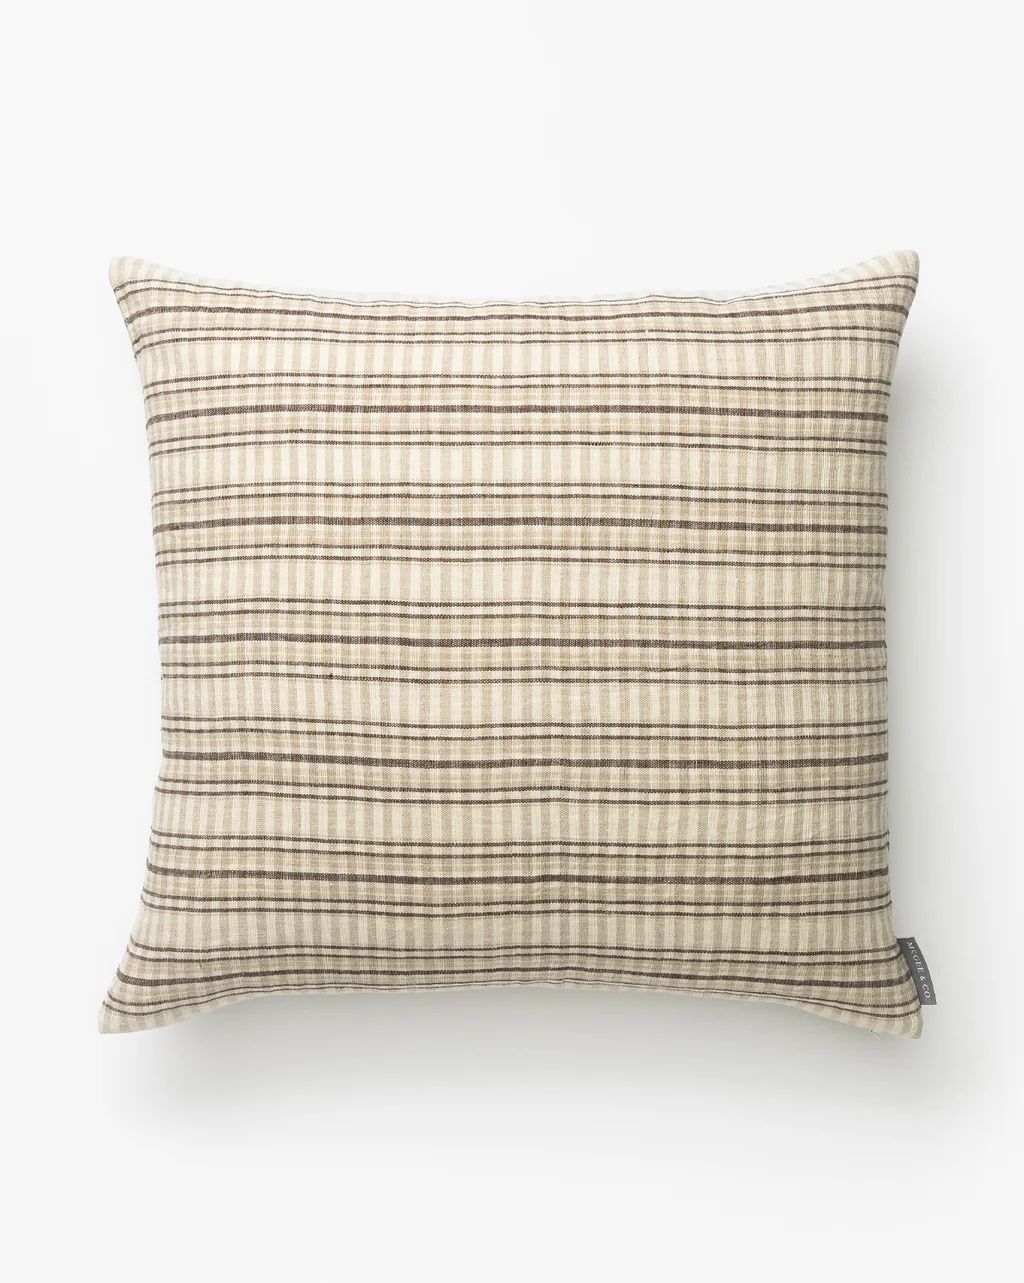 Mason Woven Stripe Pillow Cover | McGee & Co.